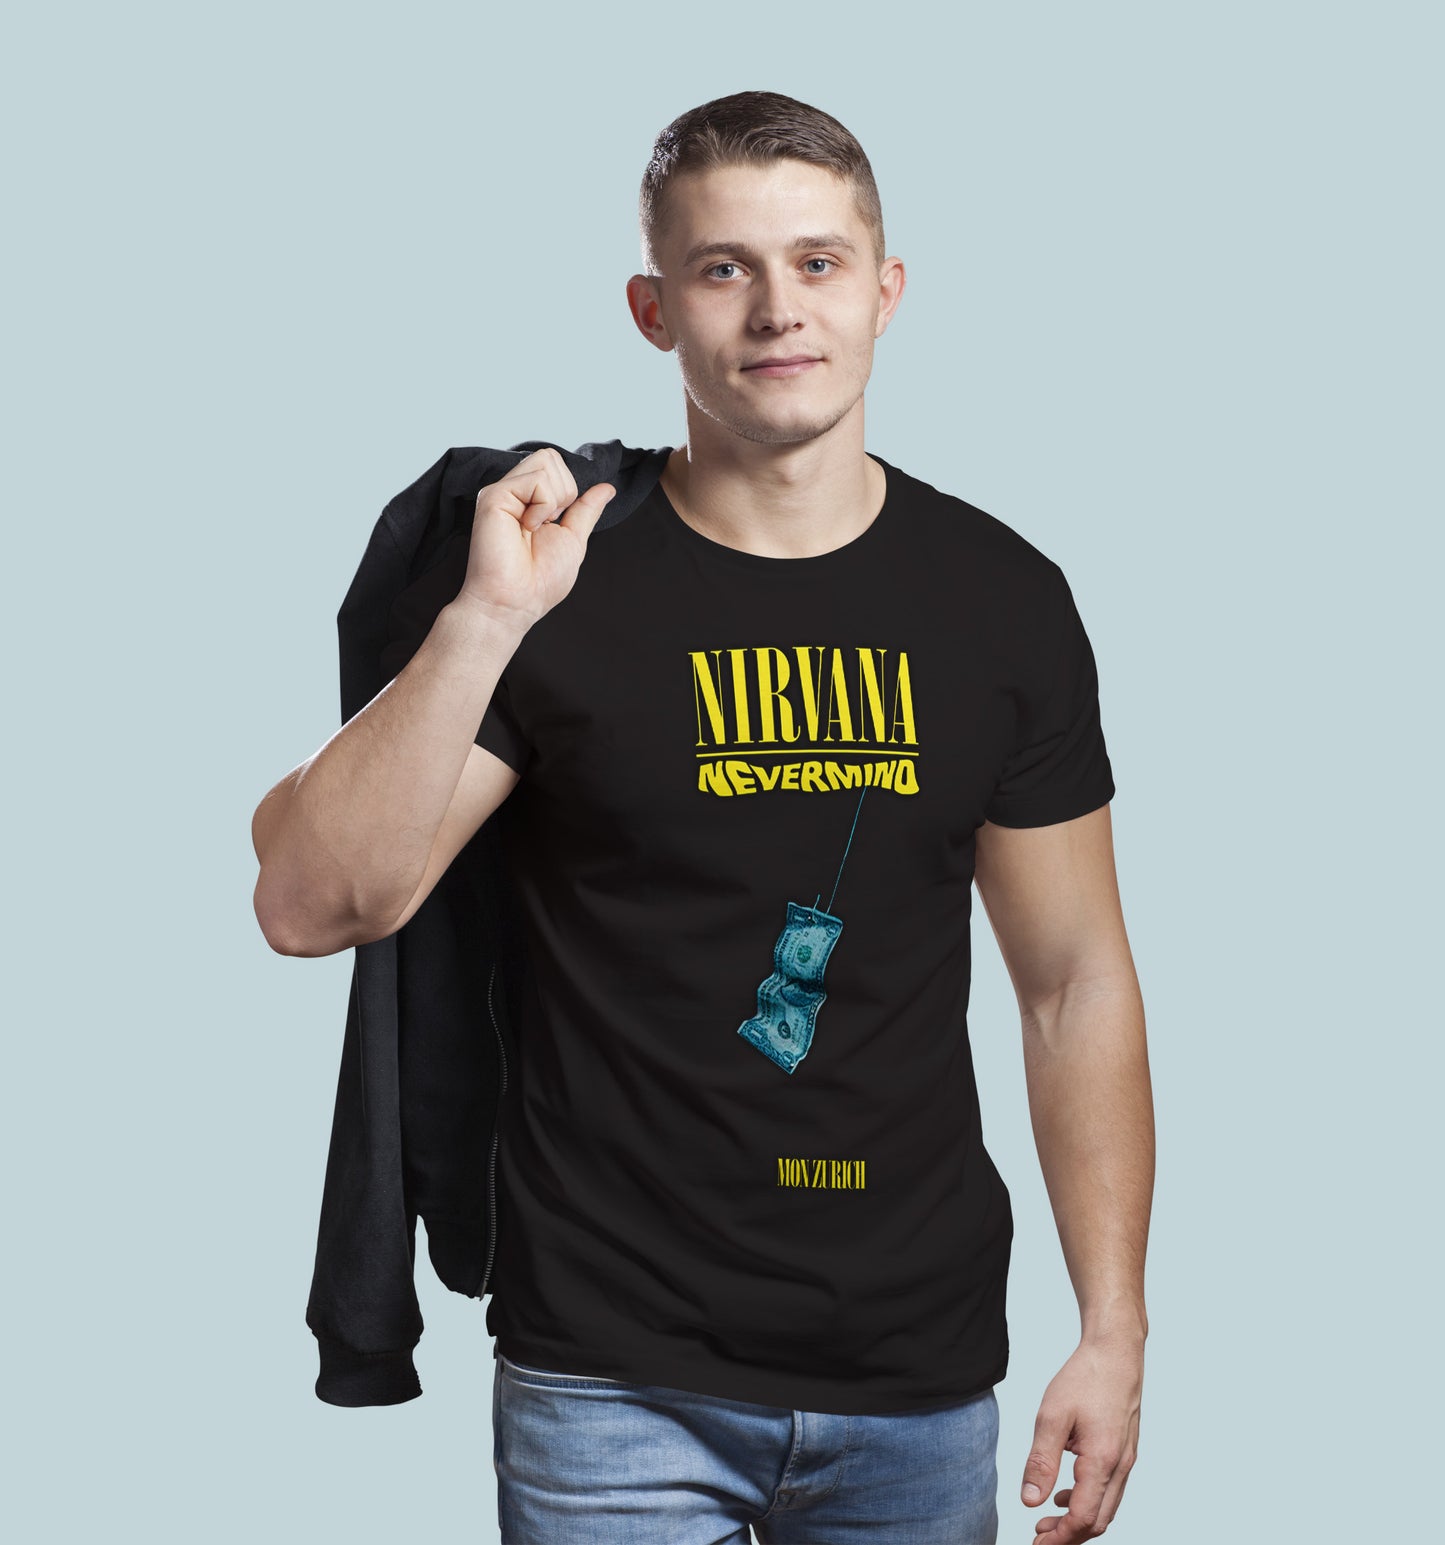 NIRVANA NEVERMIND T-shirt in Dark - Mon Zurich Originals